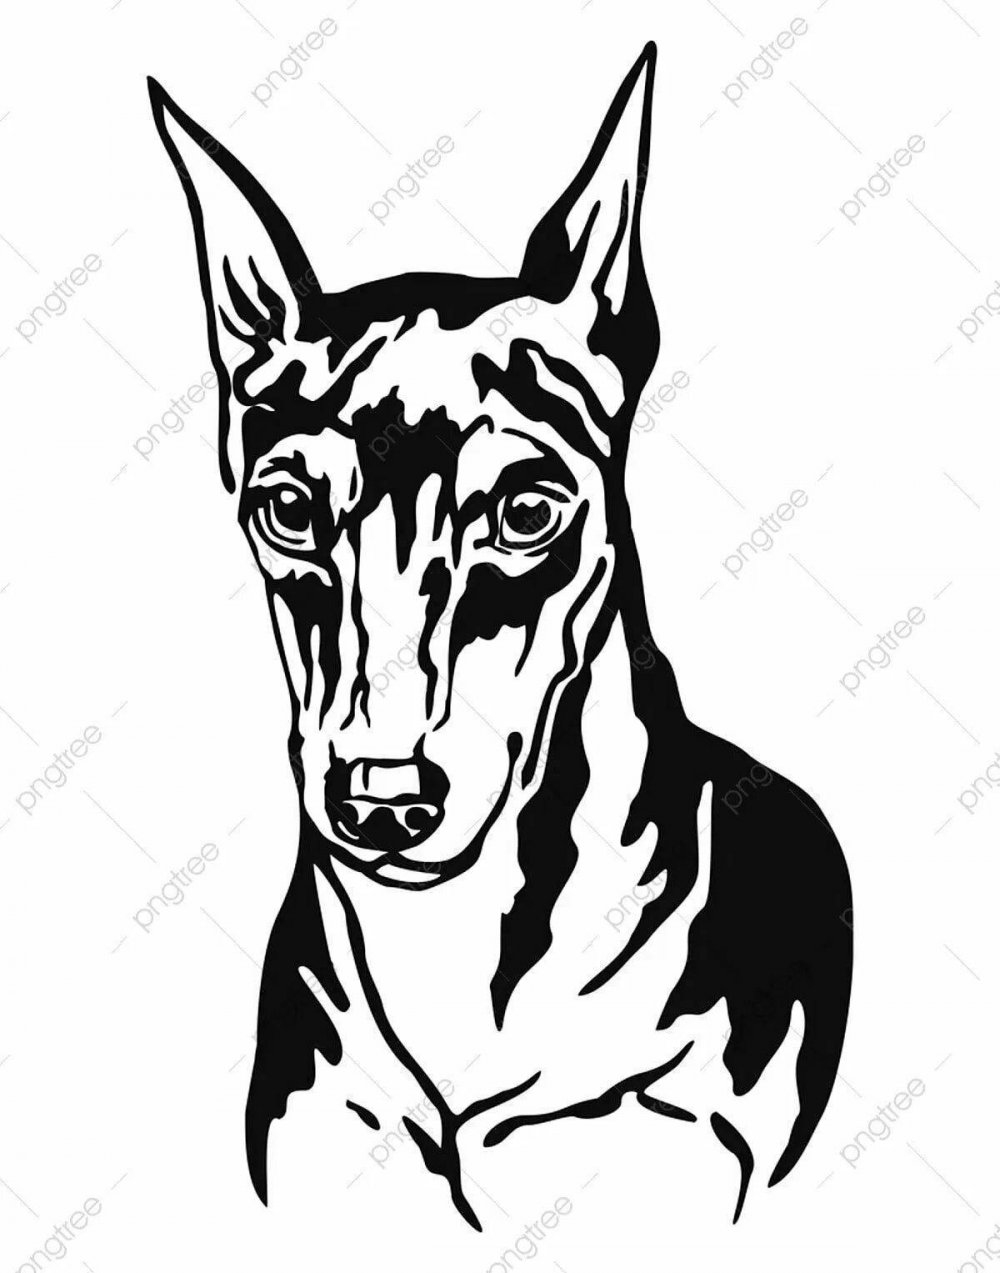 Рисунки собаки Доберман для начинающих